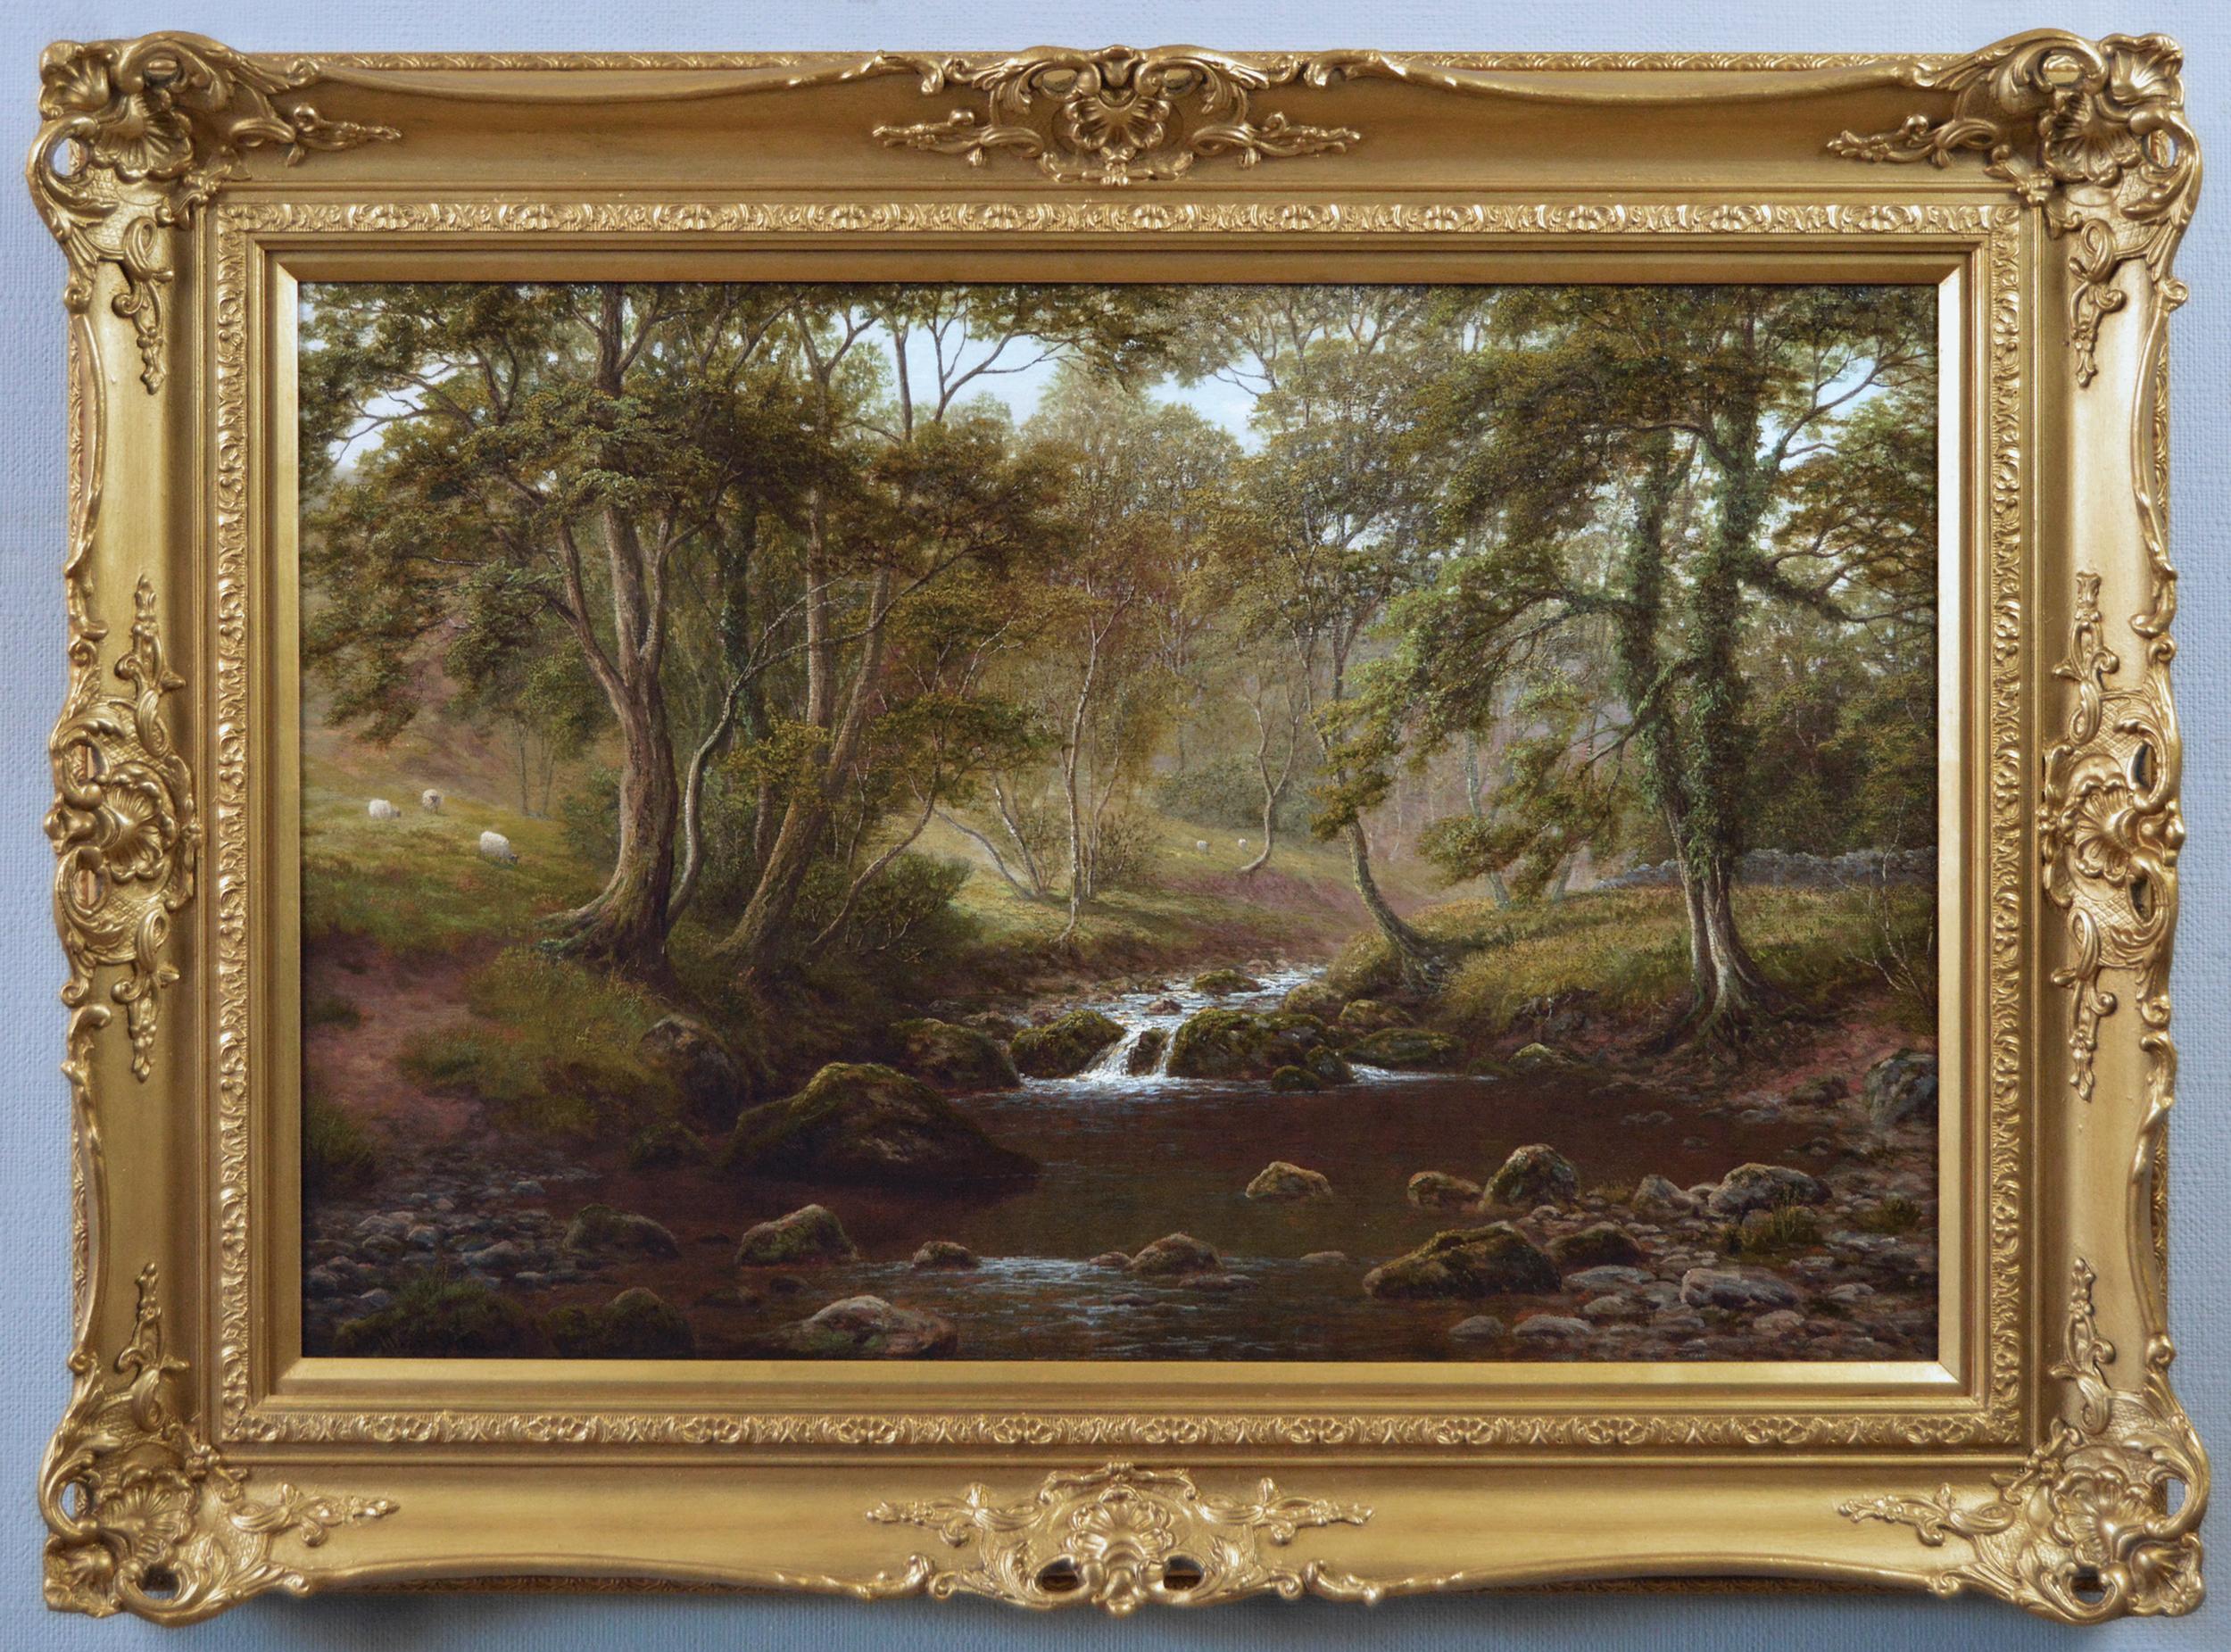 Landscape Painting William Mellor - Peinture à l'huile de paysage du 19e siècle représentant un vallon de rivière 